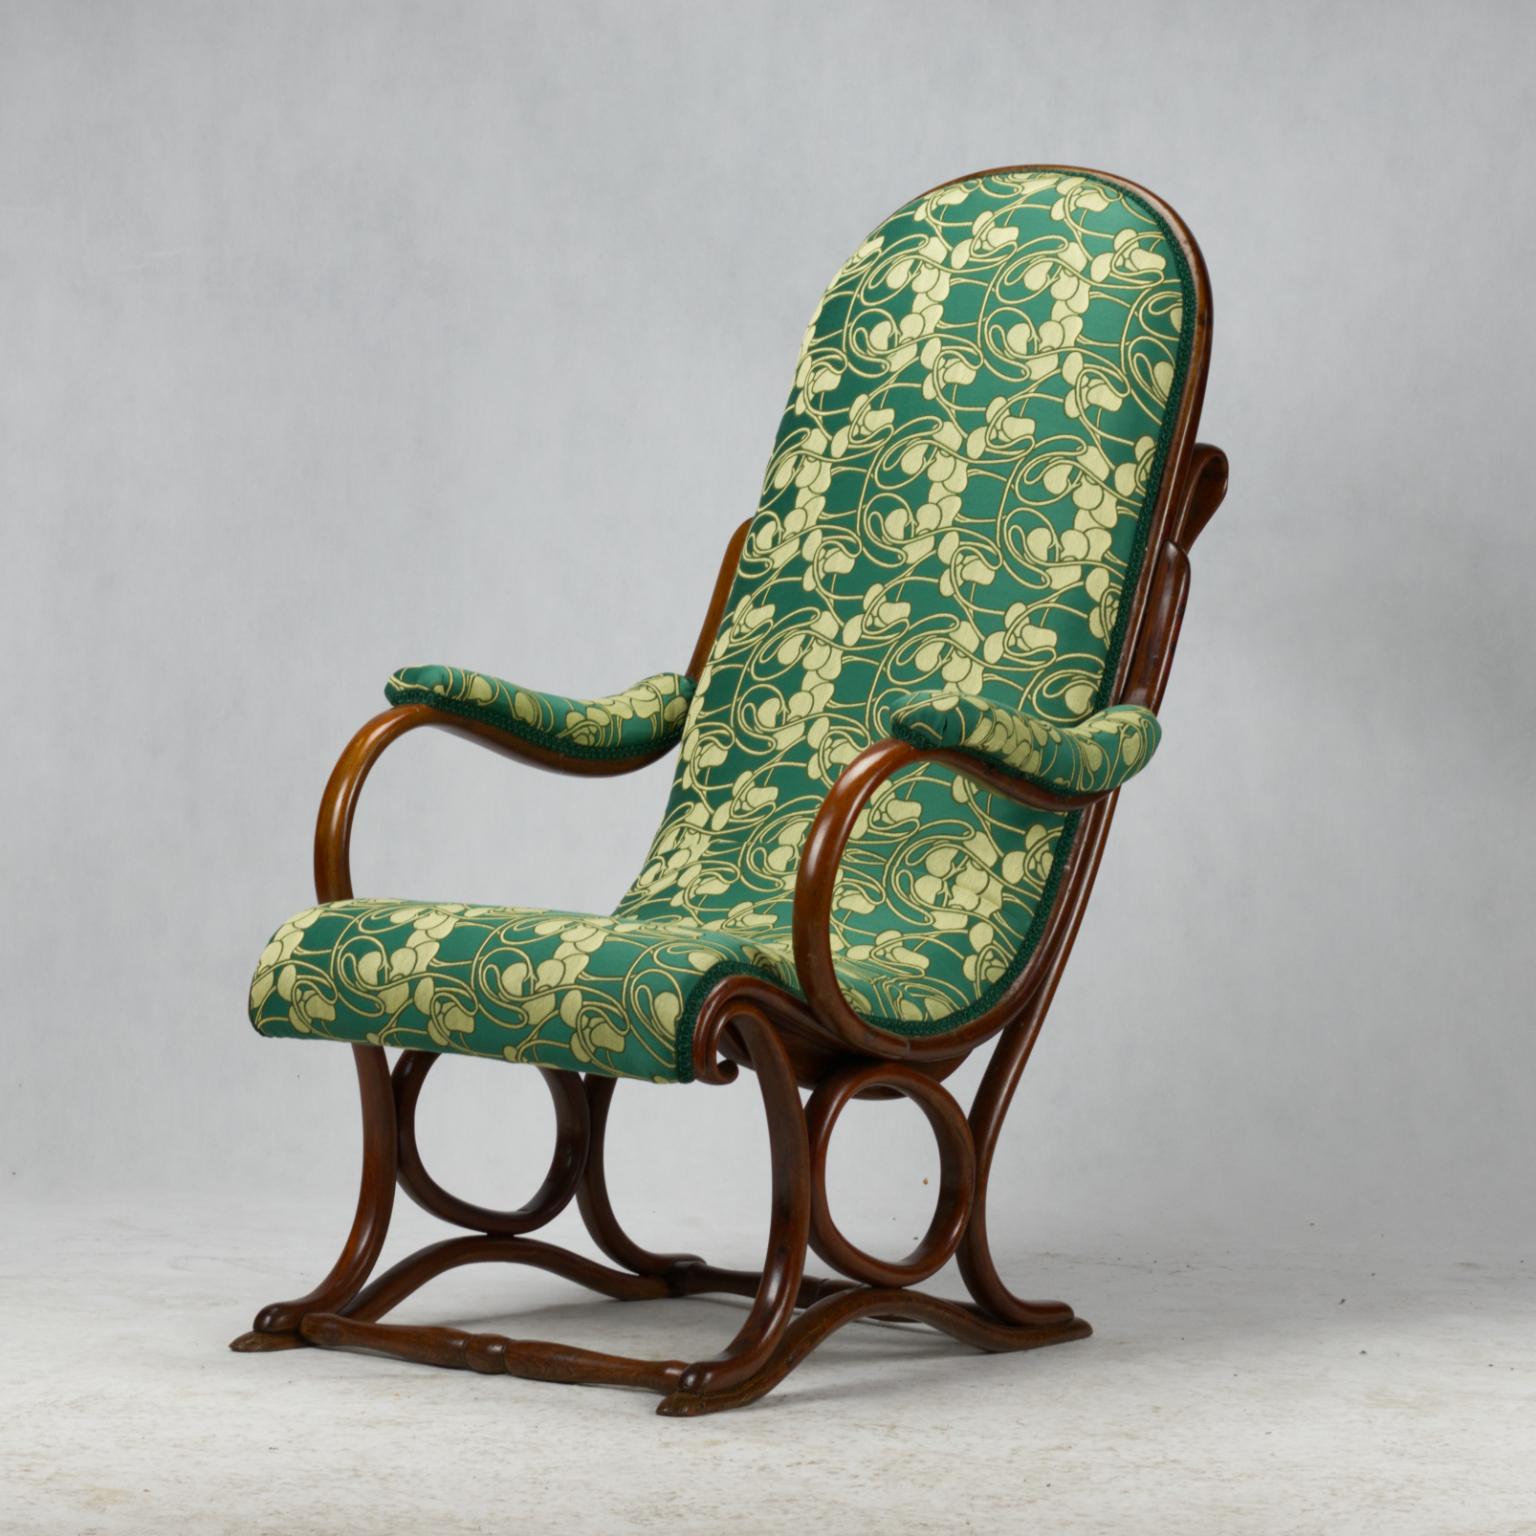 Très rare fauteuil Thonet ancien n° 1 produit par Gebruder Thonet de la fin du 19ème siècle en très bon état. Nouvelle tapisserie.

La dernière photo est tirée du catalogue Gebruder Thonet de 1886.
 